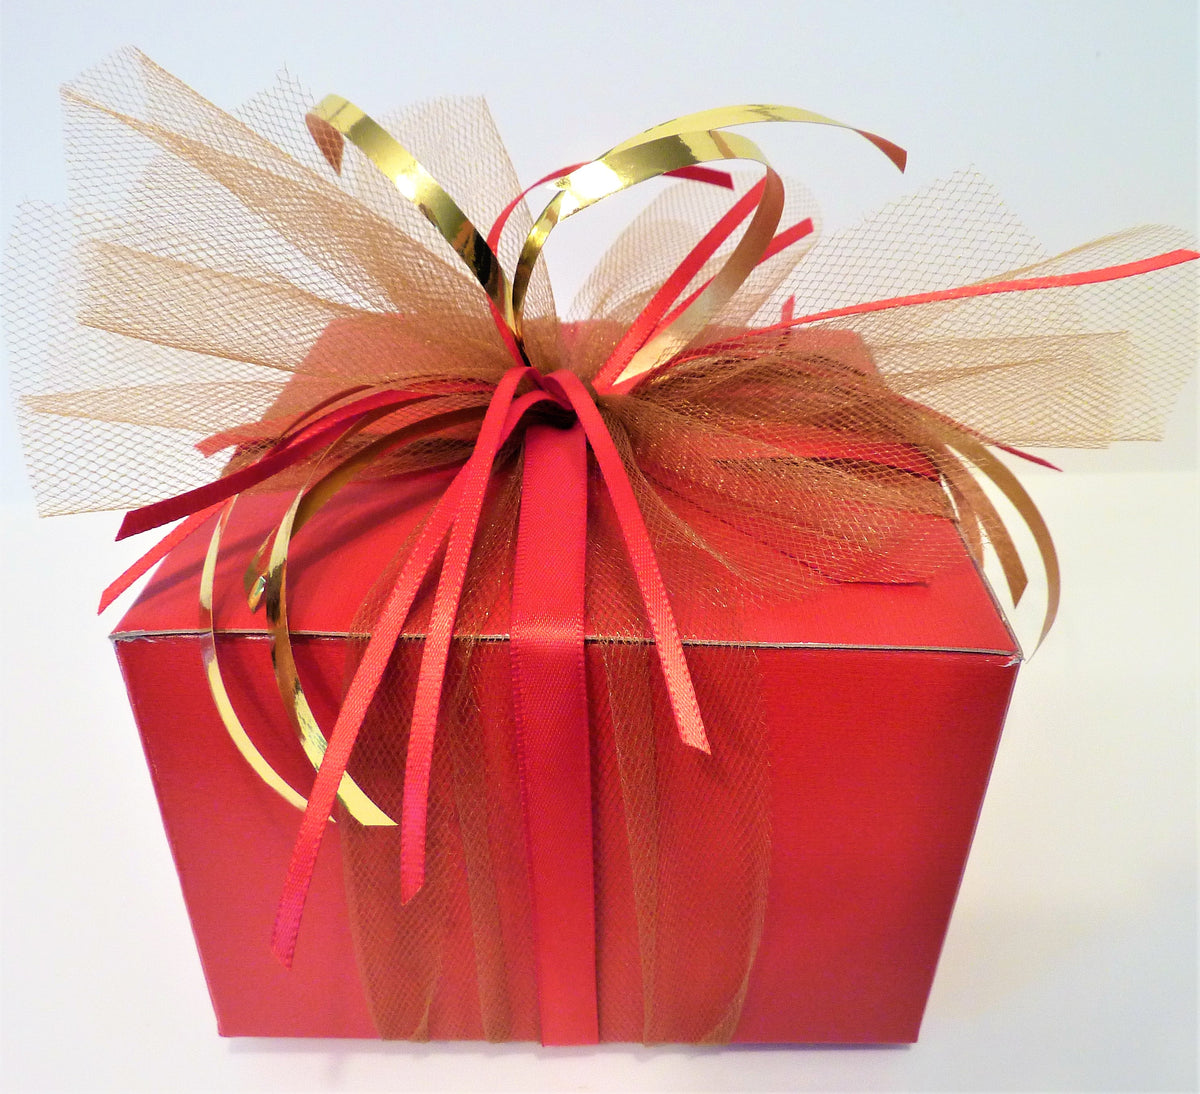 Candyland navideño "flotante": bastones de caramelo, piruletas, gemas festivas rojas y verdes - Decoración de jarrones